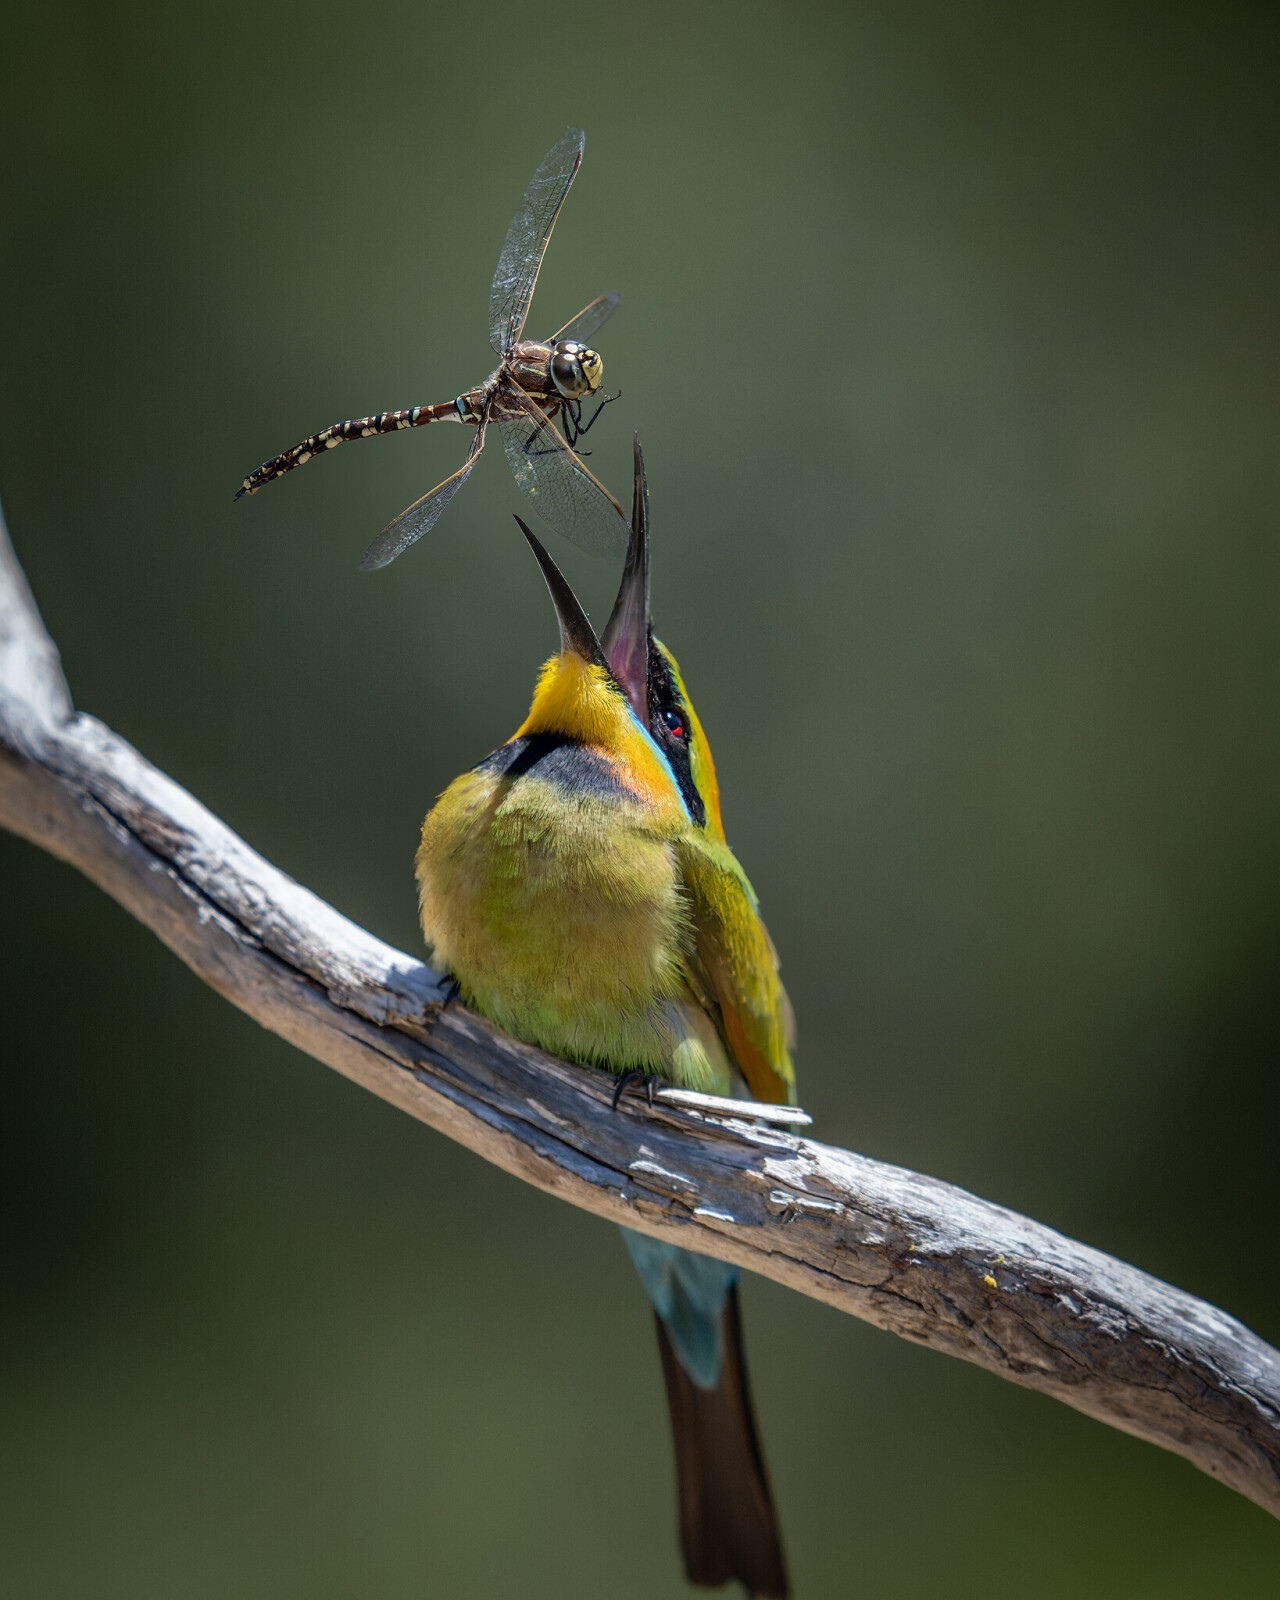 Финалист в категории «Мир природы», 2021. Радужный пчелоед поймал стрекозу в Австралии. Автор Стив Николлс.